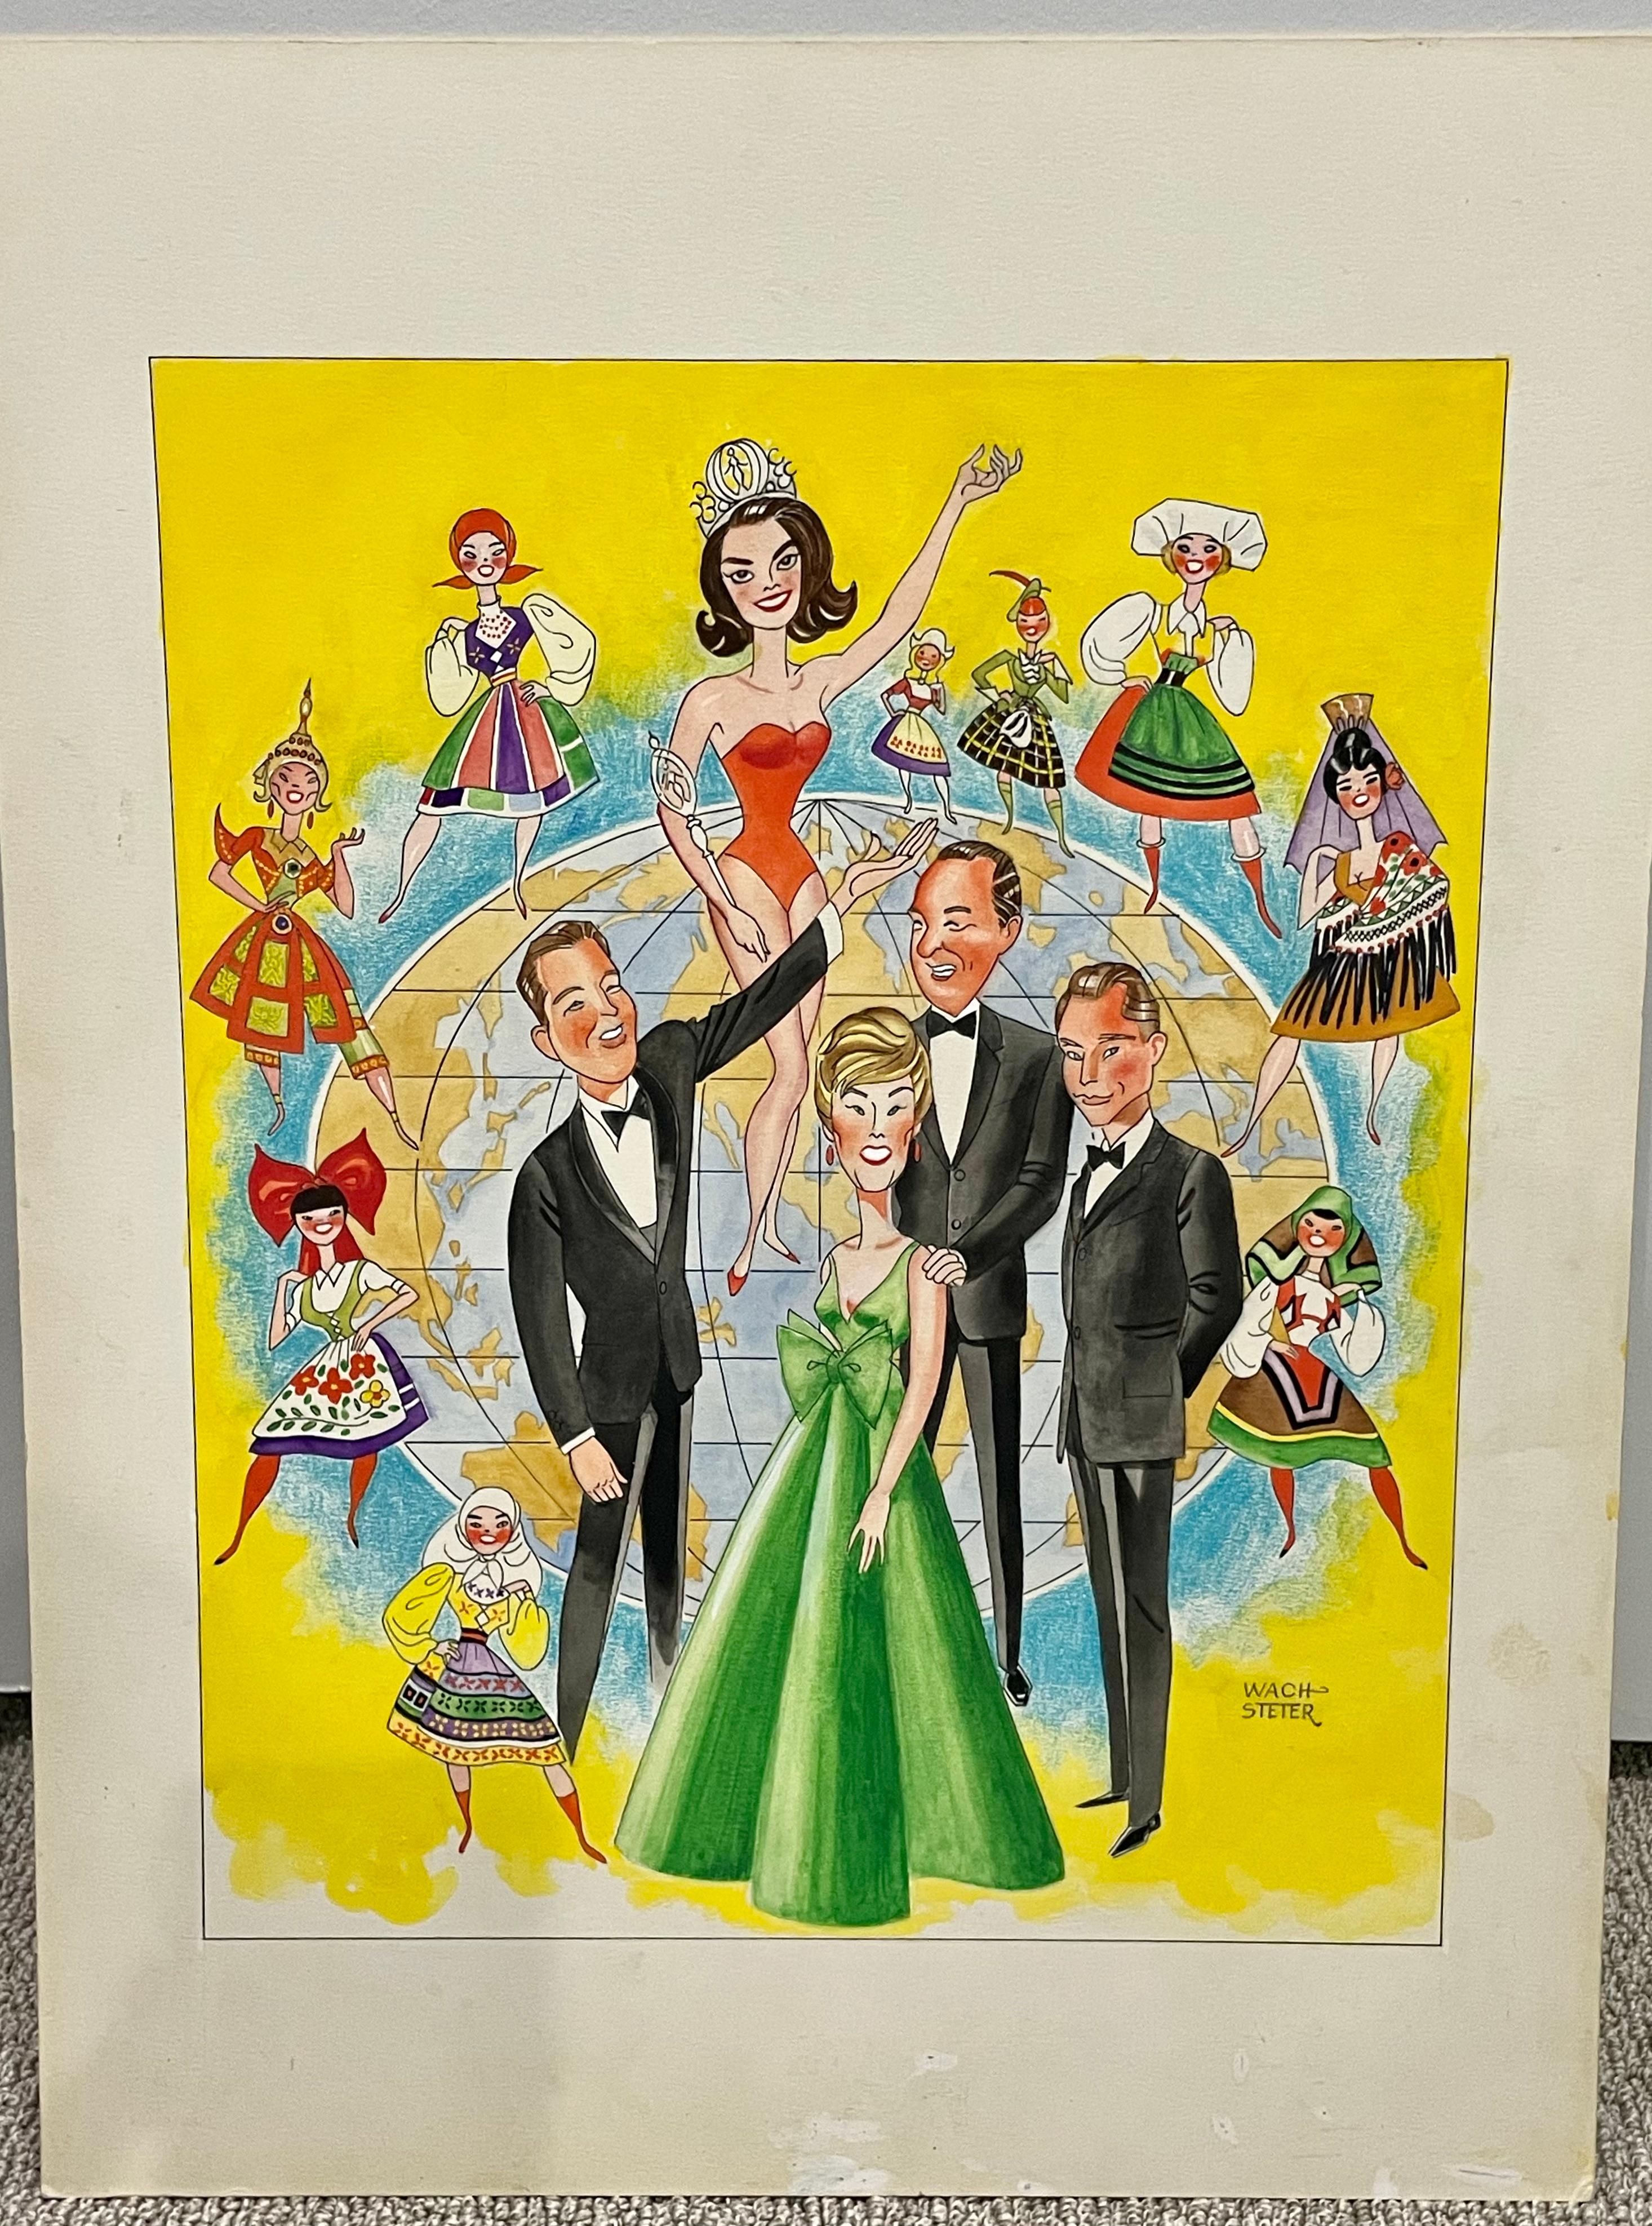 Signé en bas à droite par l'Artistics

Caricature de George Wachsteter (1911-2004) pour la diffusion sur CBS en 1965 du concours de Miss Univers avec les animateurs Jack Linkletter, June Lockhart, John Daly et Pat Boone.

Accent de Floride à la